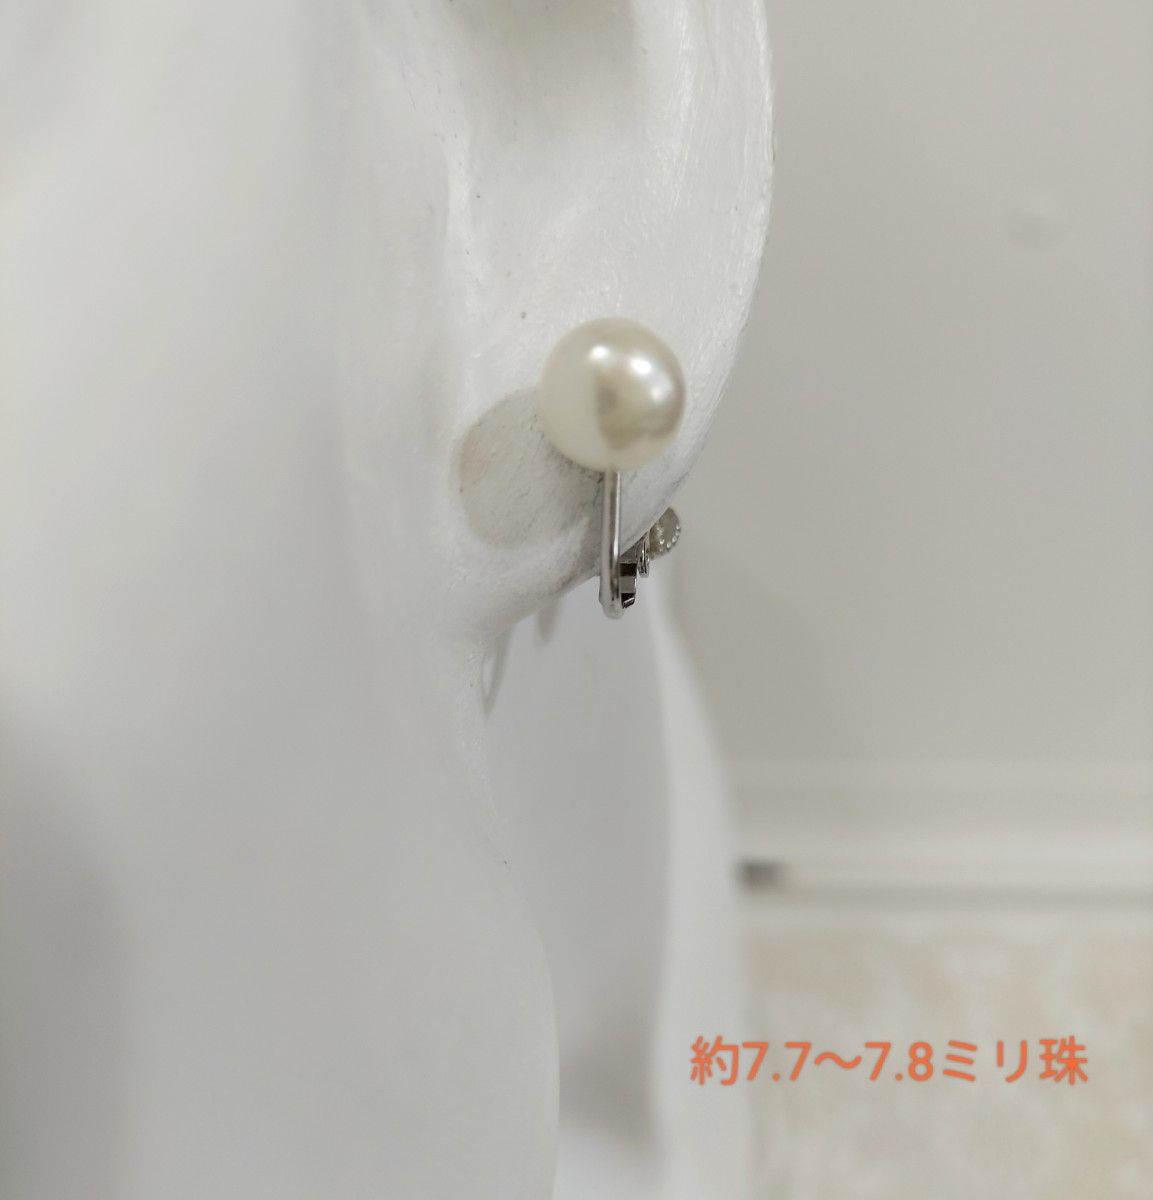 あこや本真珠（日本産）のネジバネ式イヤリング